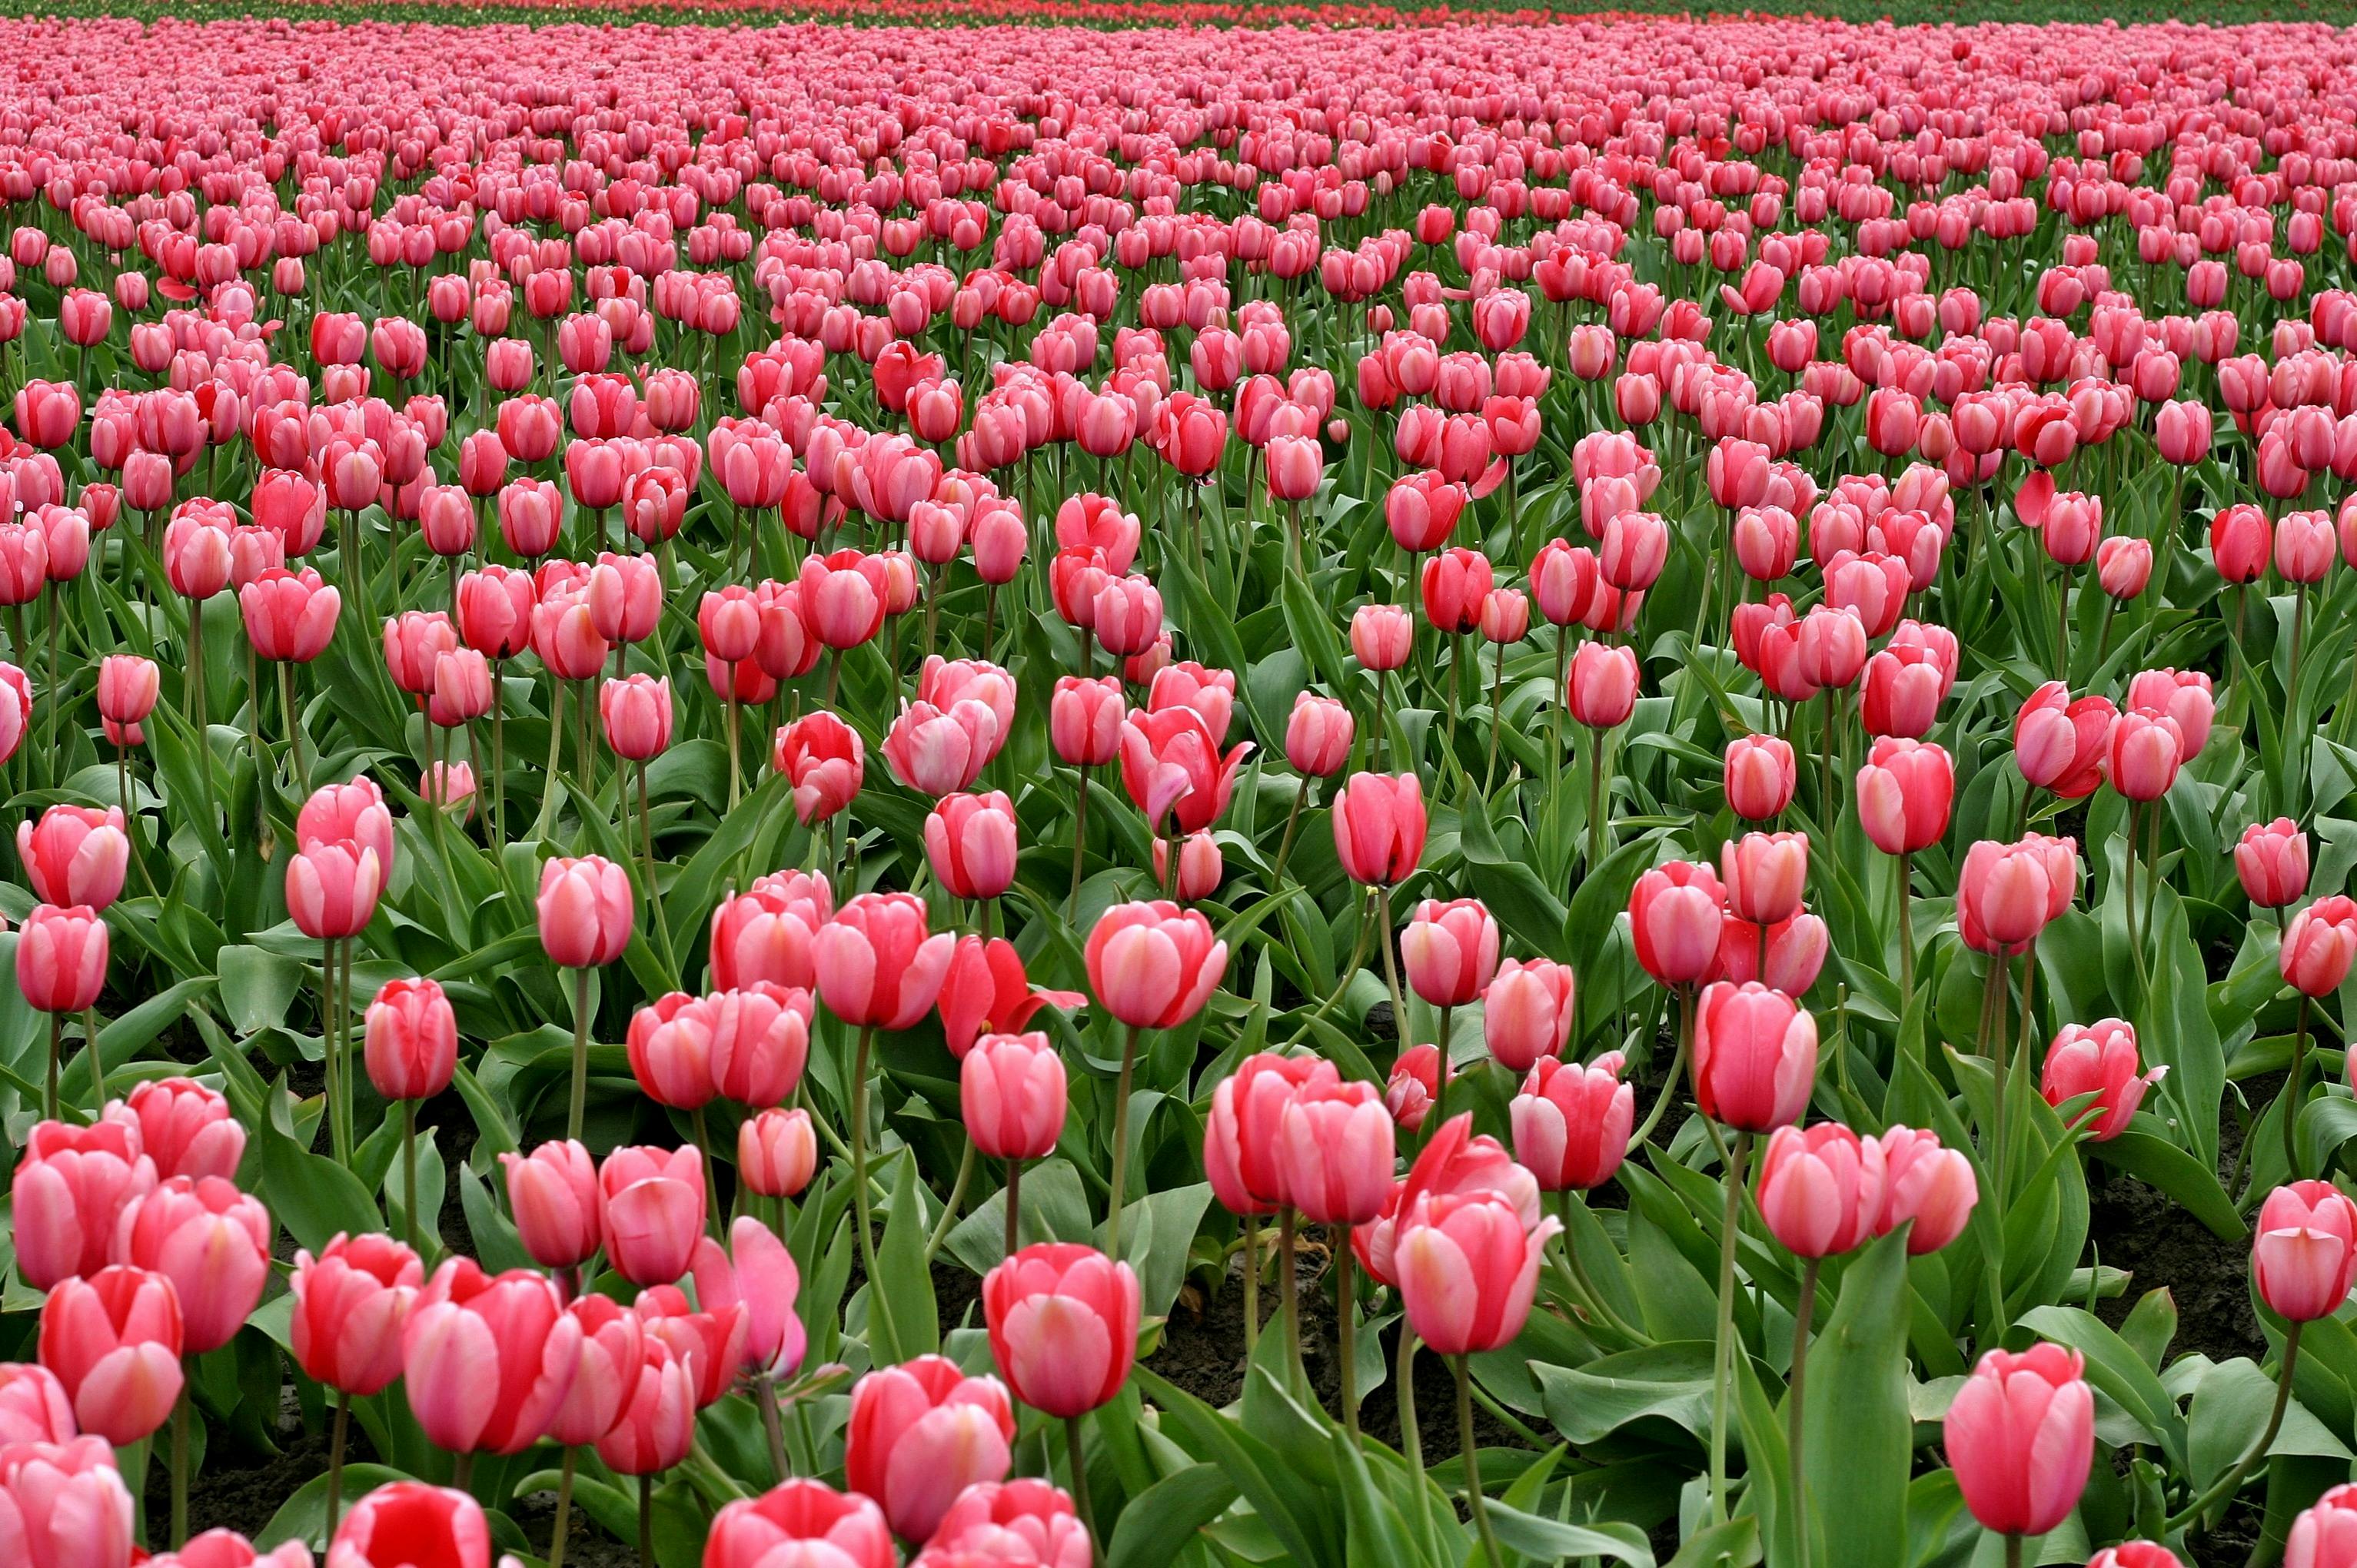 Tulip Flower Nature  Free photo on Pixabay  Pixabay